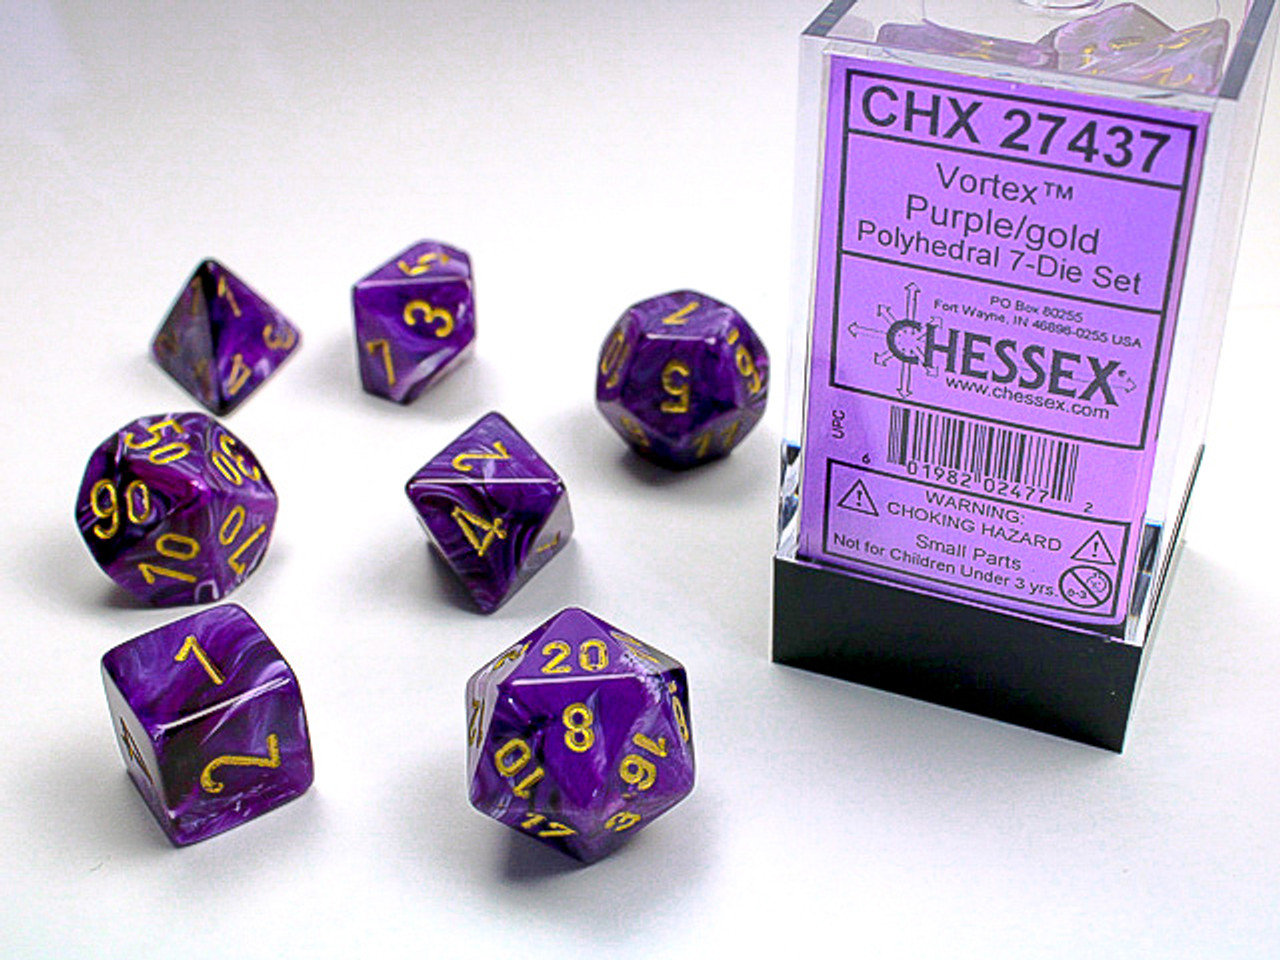 27437 - Vortex® Polyhedral Purple/gold 7-Die Set